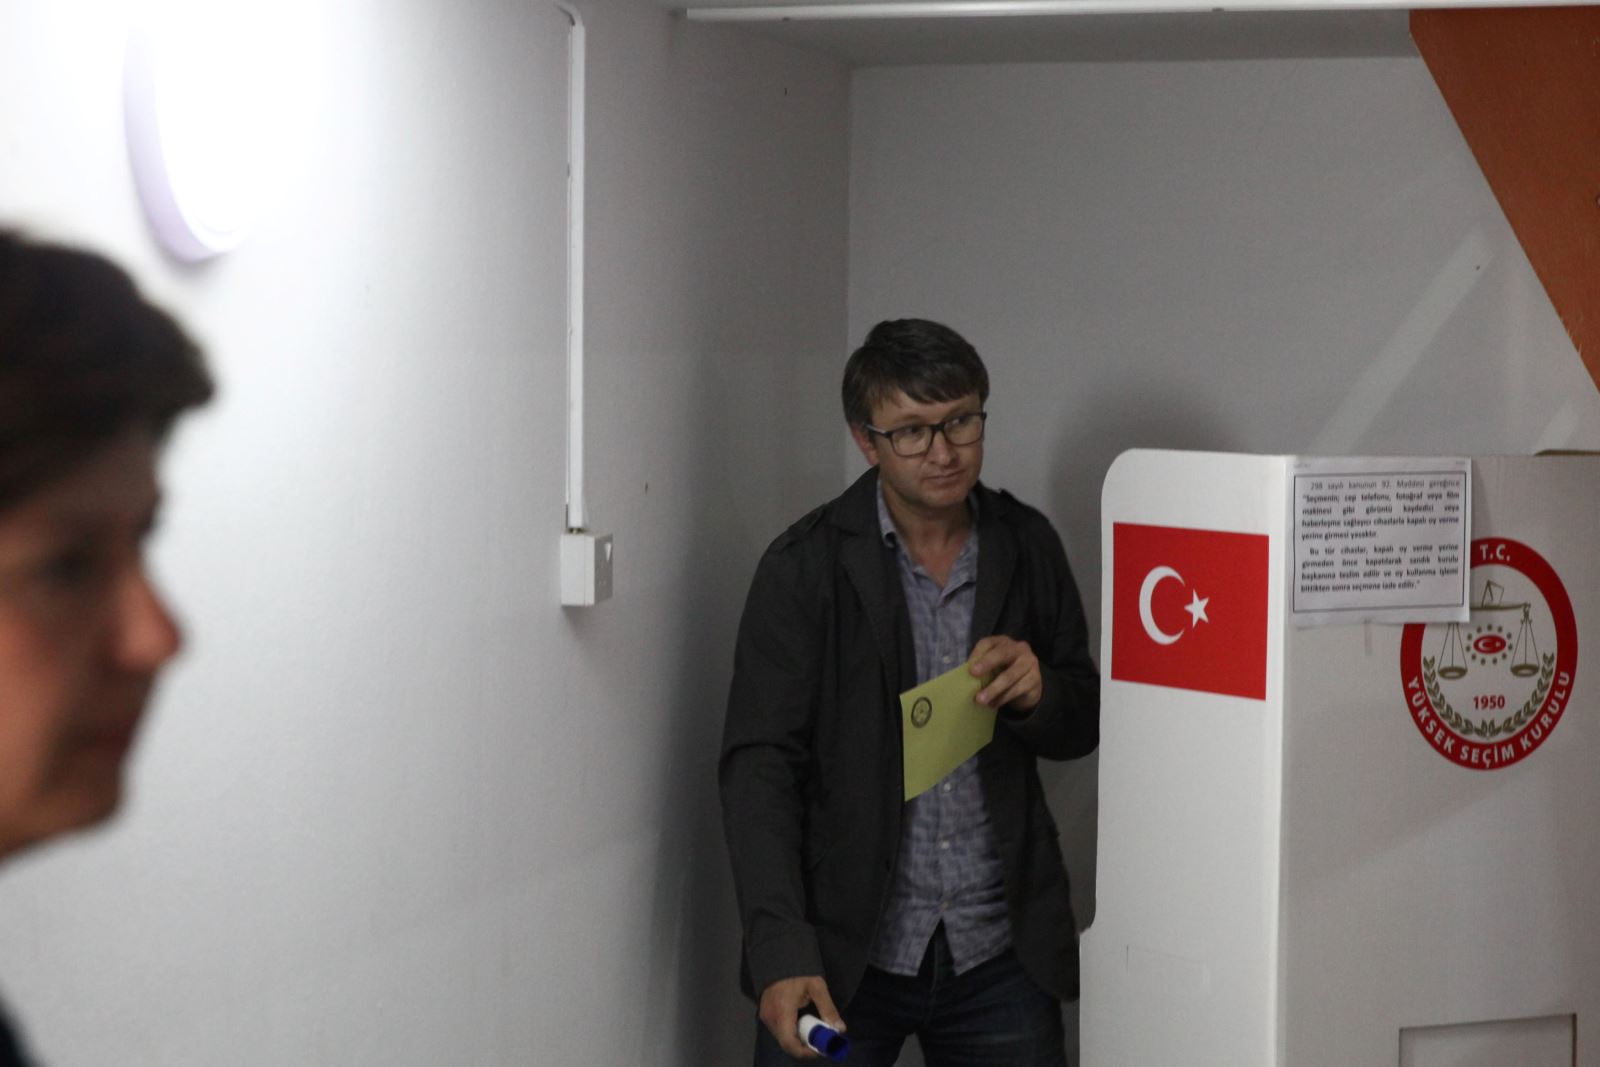 محكمة تركية عليا ترفض طعن المعارضة في نتيجة الاستفتاء